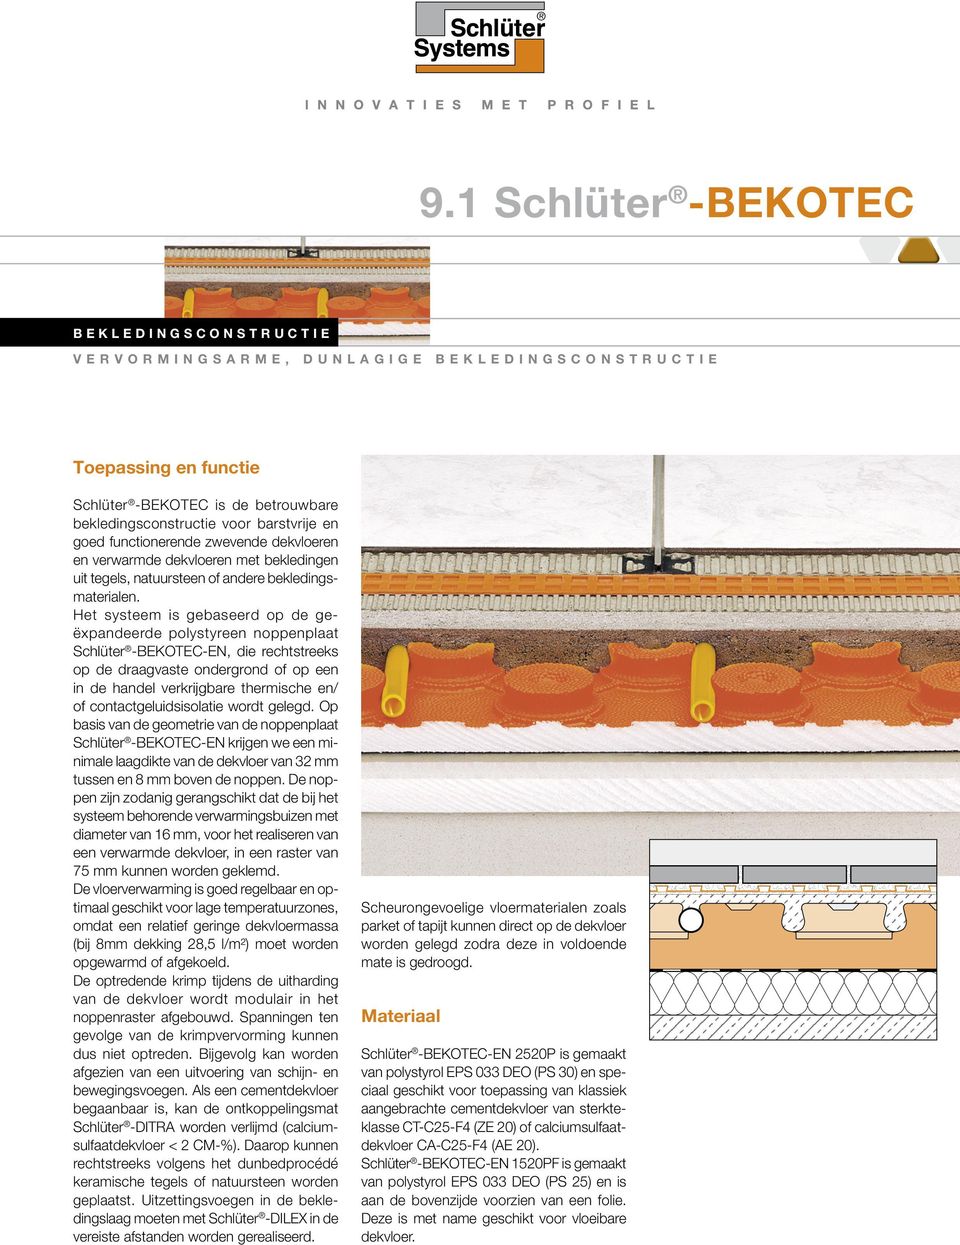 Het systeem is gebaseerd op de geëx pandeerde polystyreen noppenplaat Schlüter -BEKOTEC-EN, die rechtstreeks op de draagvaste ondergrond of op een in de handel verkrijgbare thermische en/ of contact